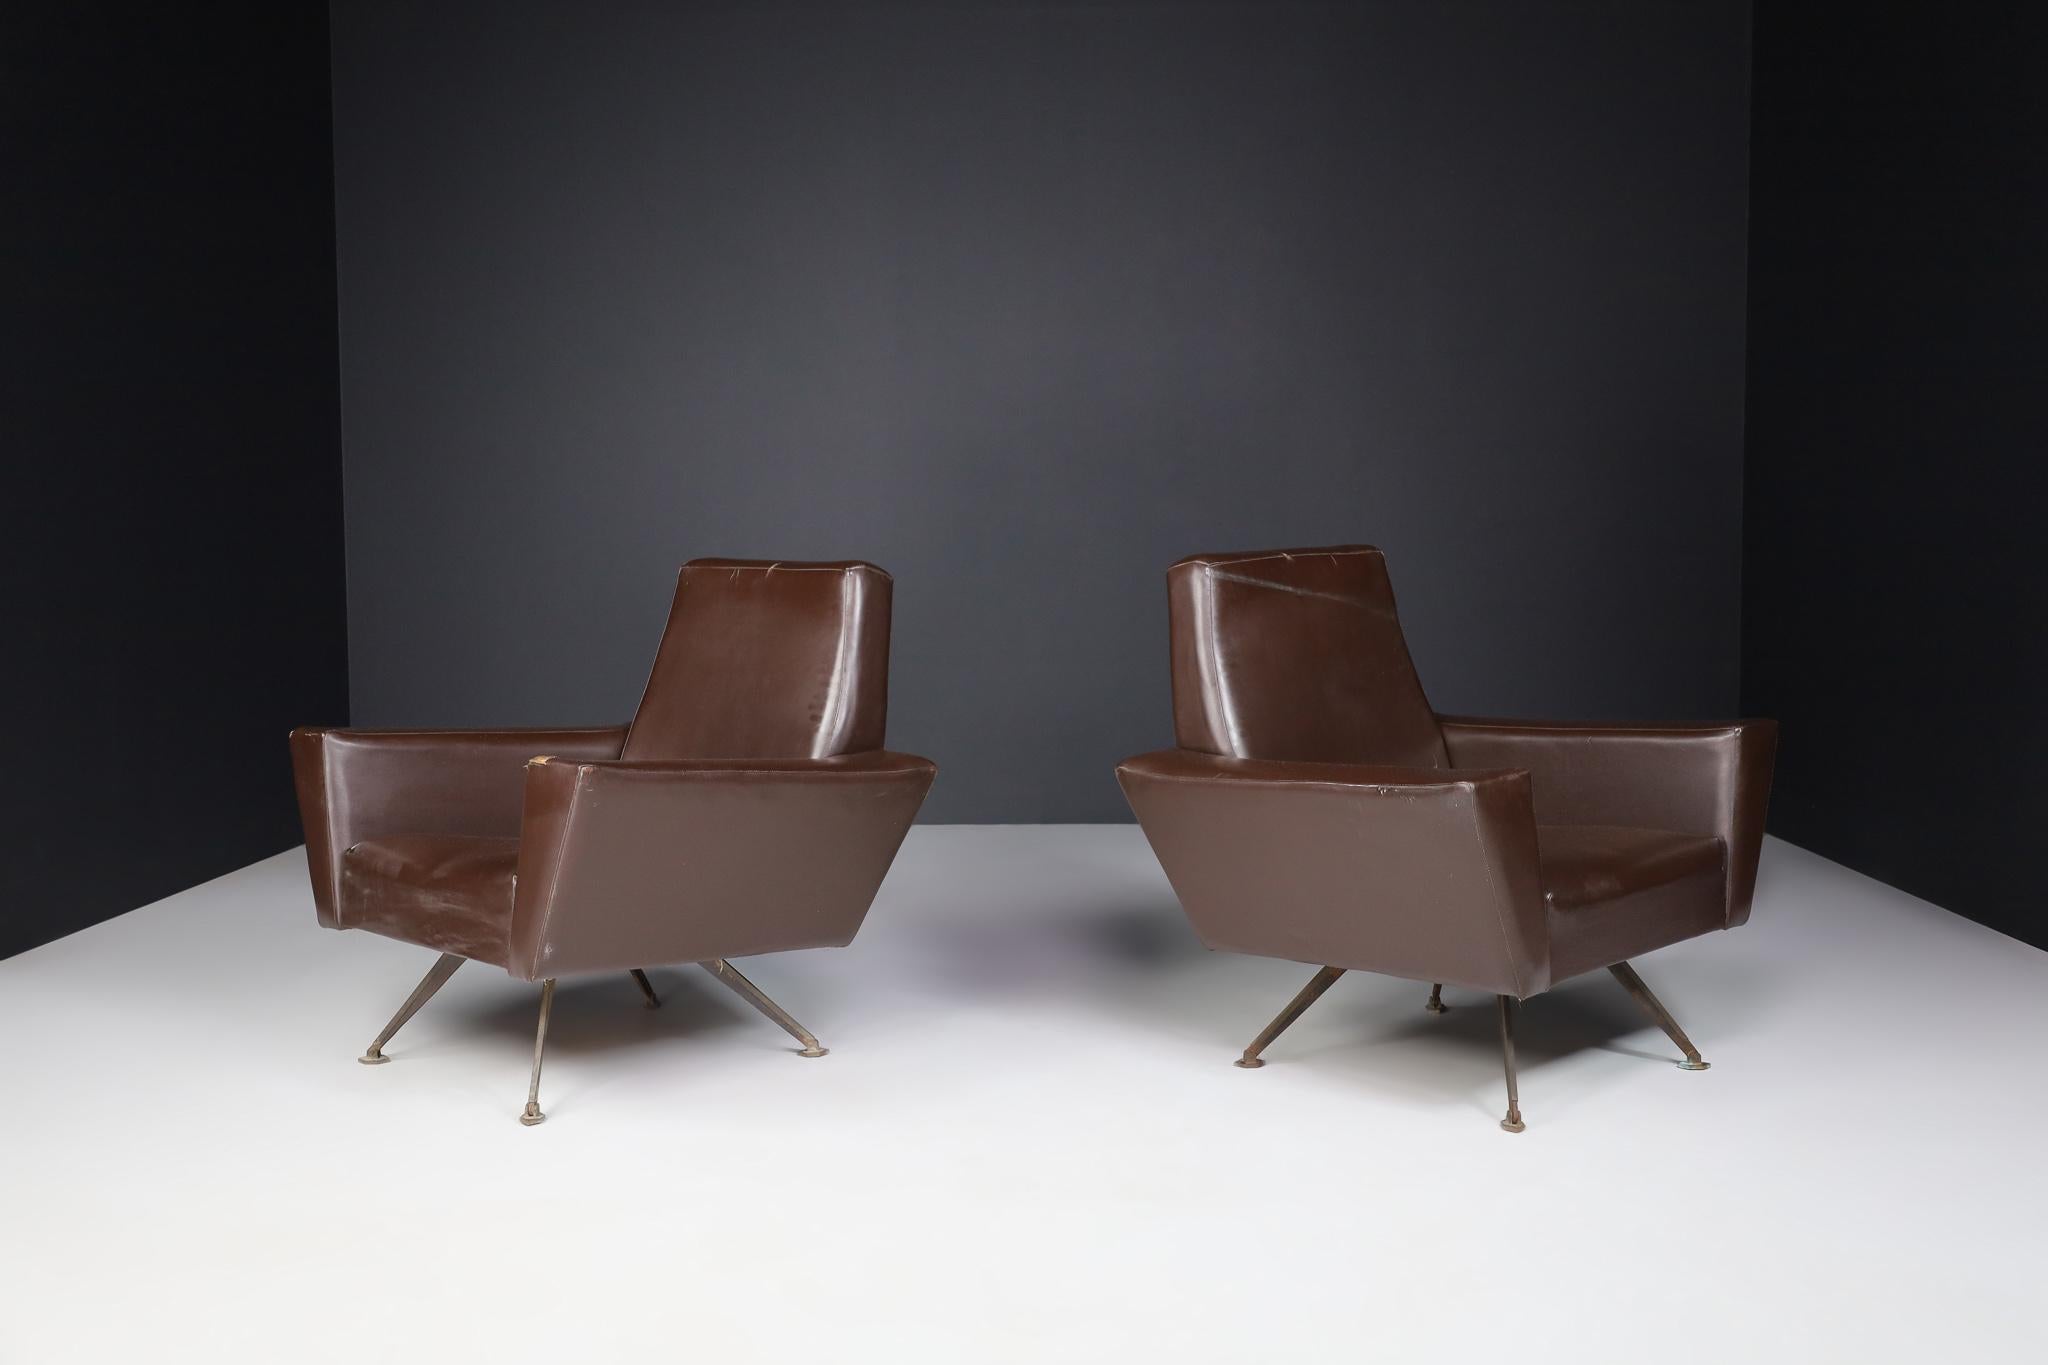 Paire de fauteuils par Studio Tecnico Italy A.P.A. et conçus par Lenzi 1950s.

Cette fantastique paire de fauteuils est fabriquée en Italie et présente une construction bien proportionnée aux angles aigus et aux lignes droites. Fabriqué à